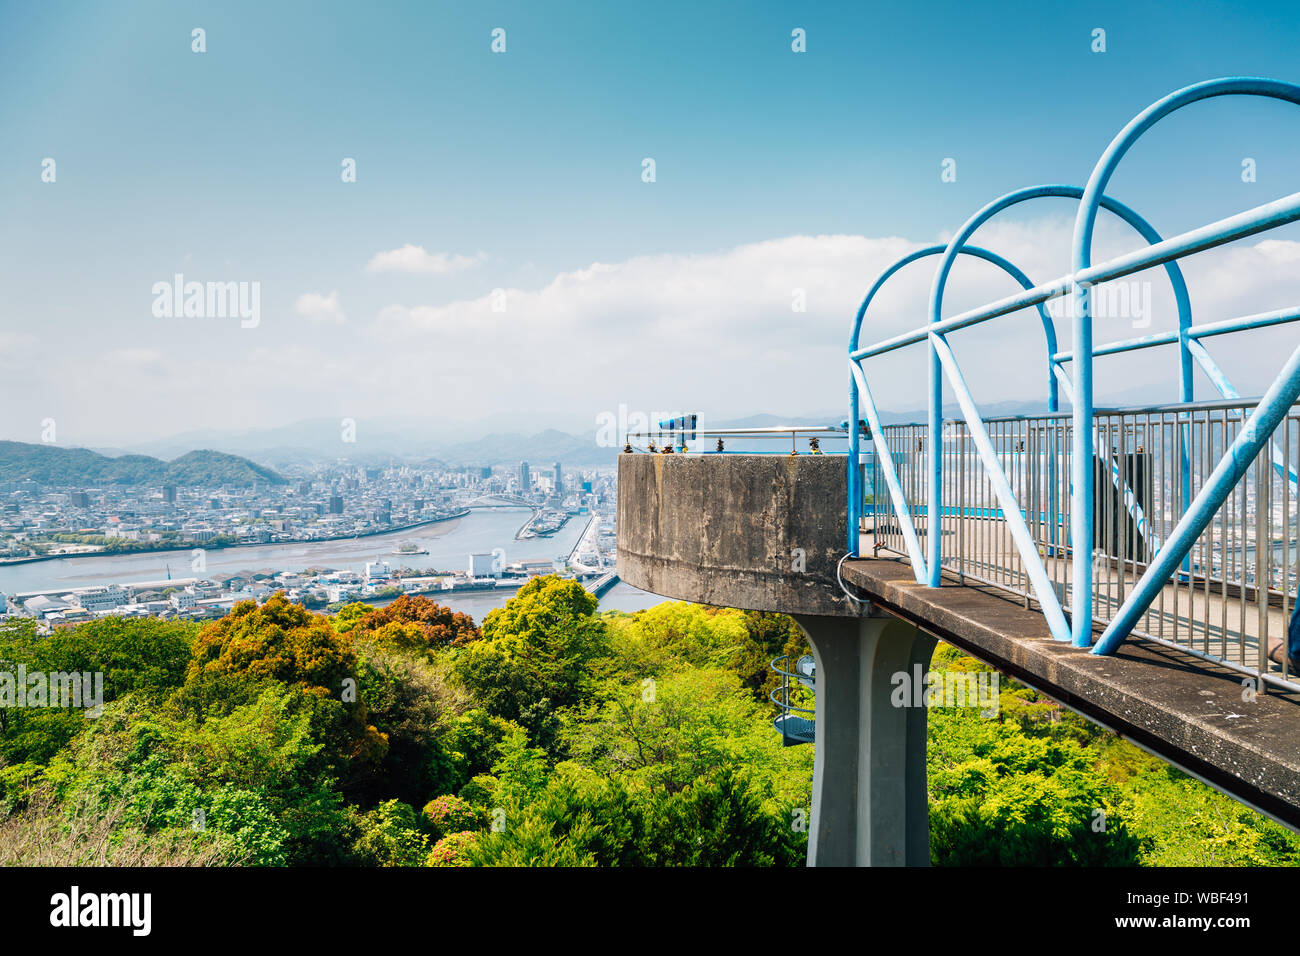 Kochi cityscape panorama à partir de Godaisan Observatoire de la montagne à Kochi, Shikoku, Japon Banque D'Images